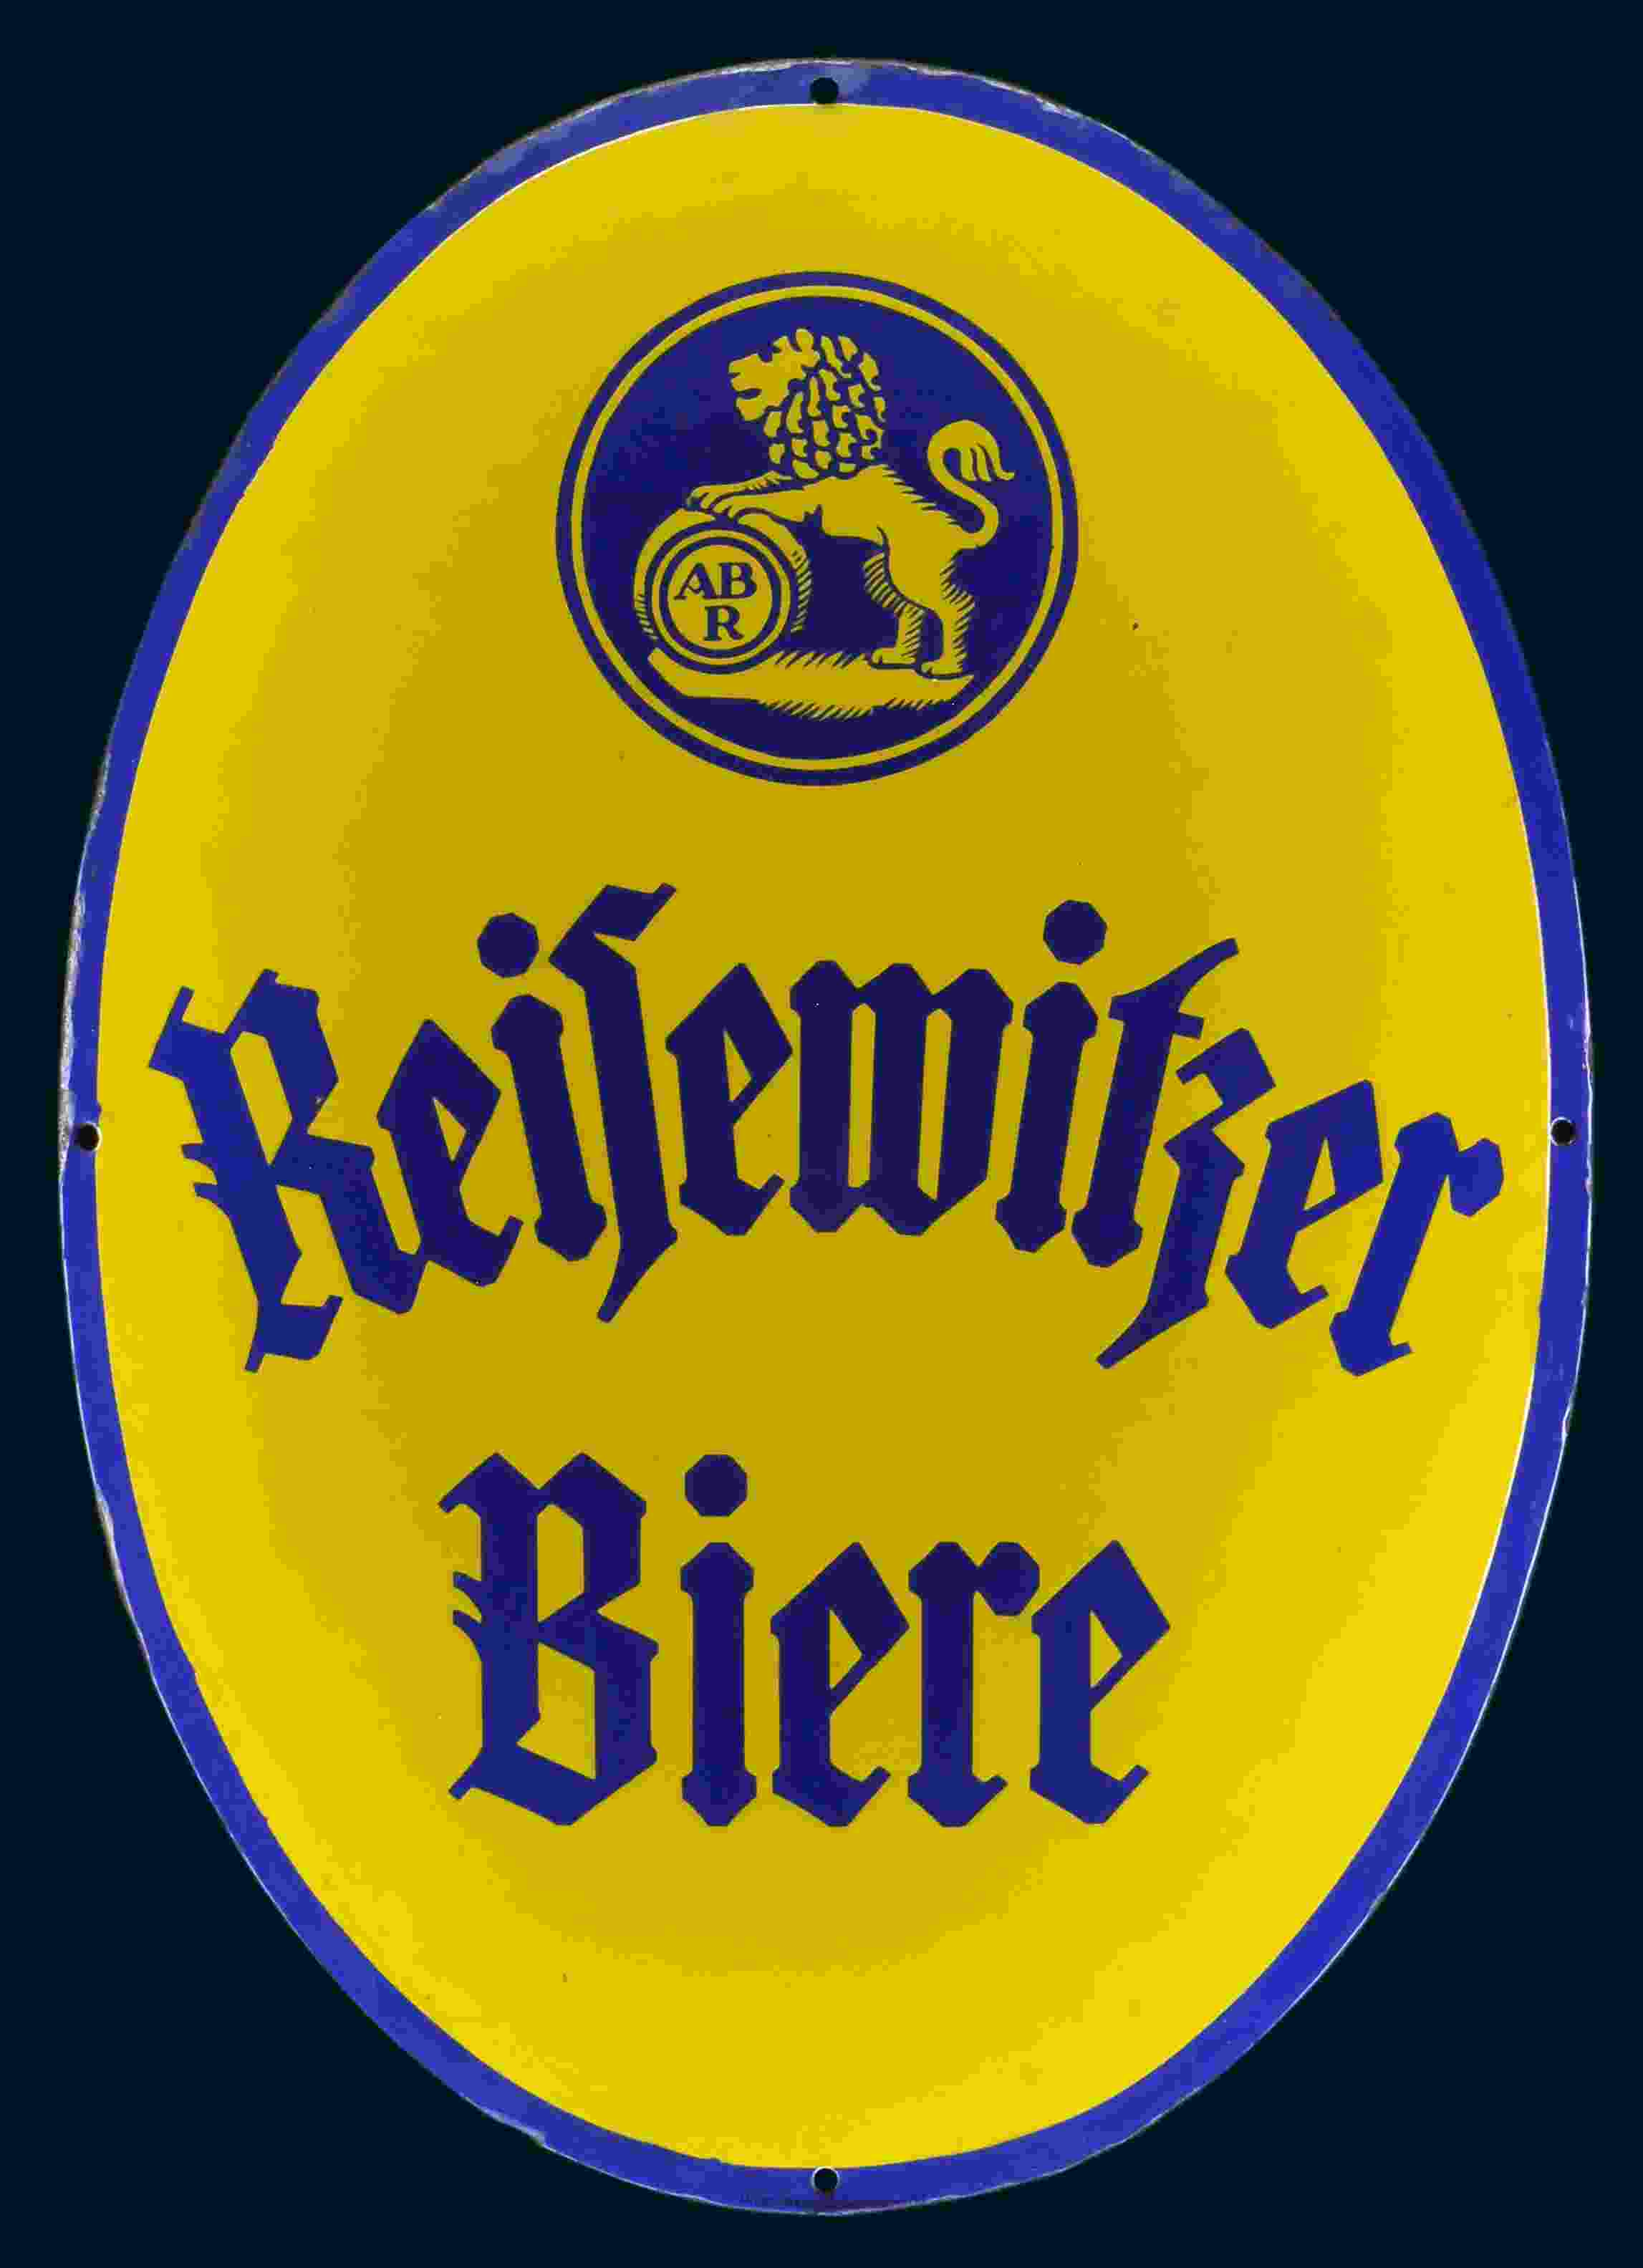 Reisewitzer Bier 